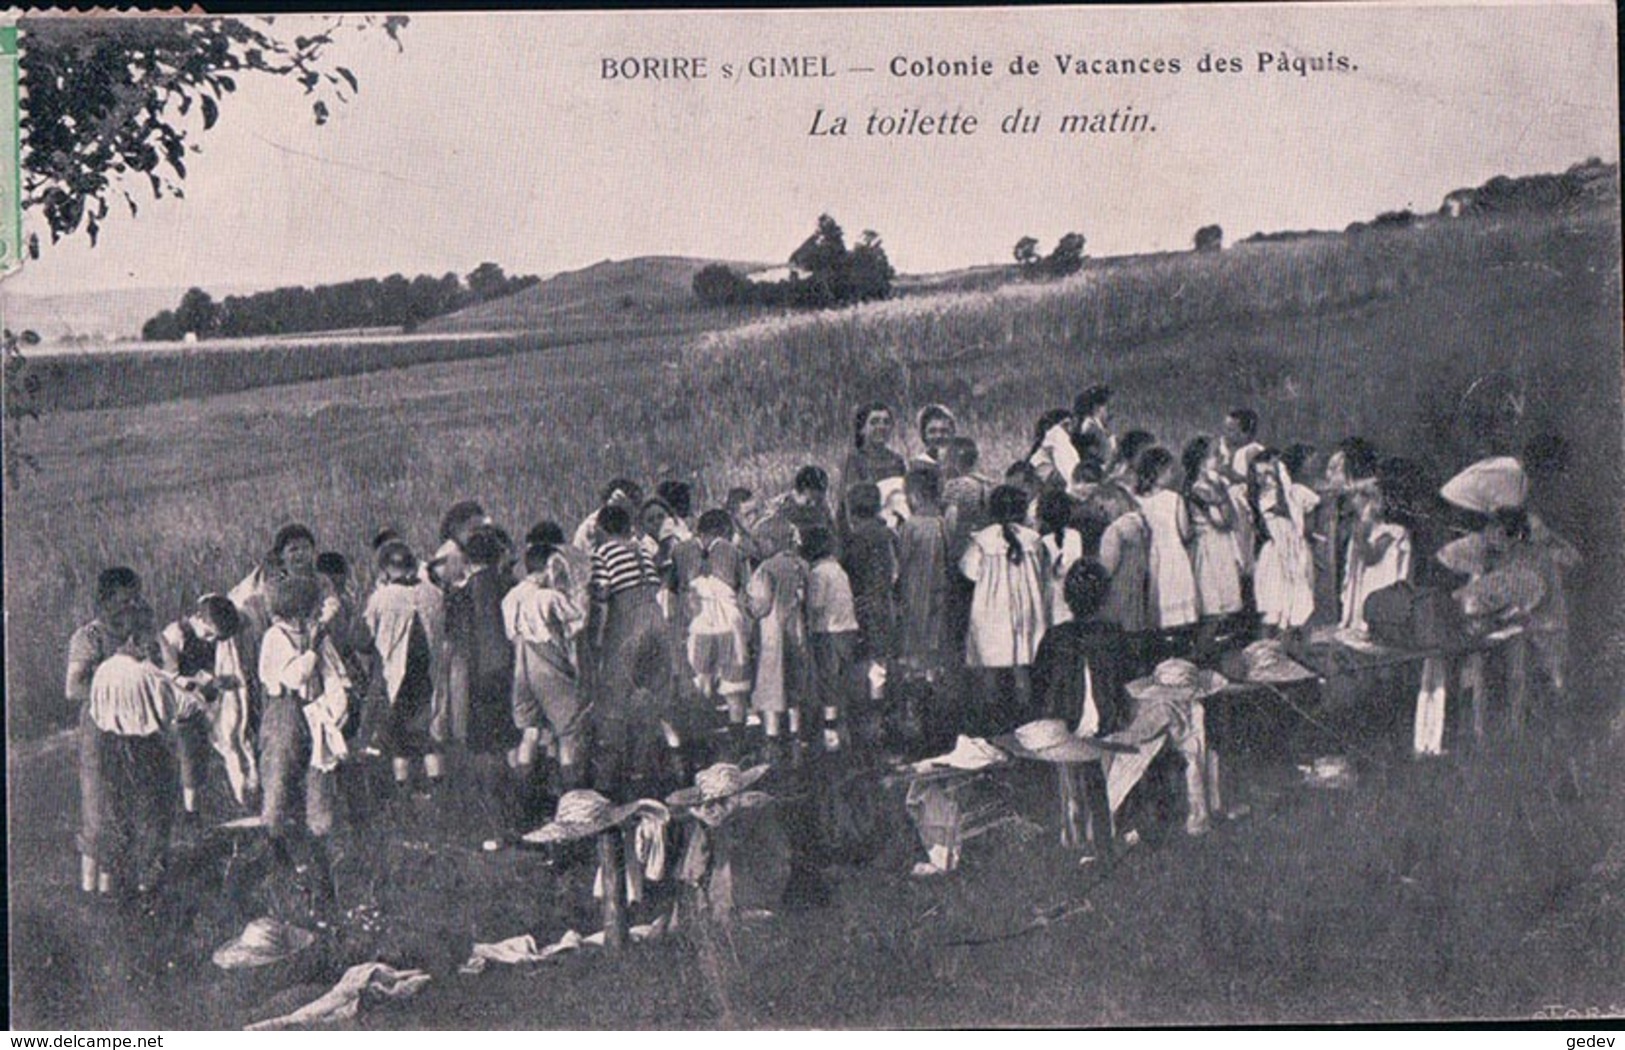 Borire Sur Gimel, Colonie De Vacances Des Pâquis, La Toilette Du Matin (25.4.08) - Gimel